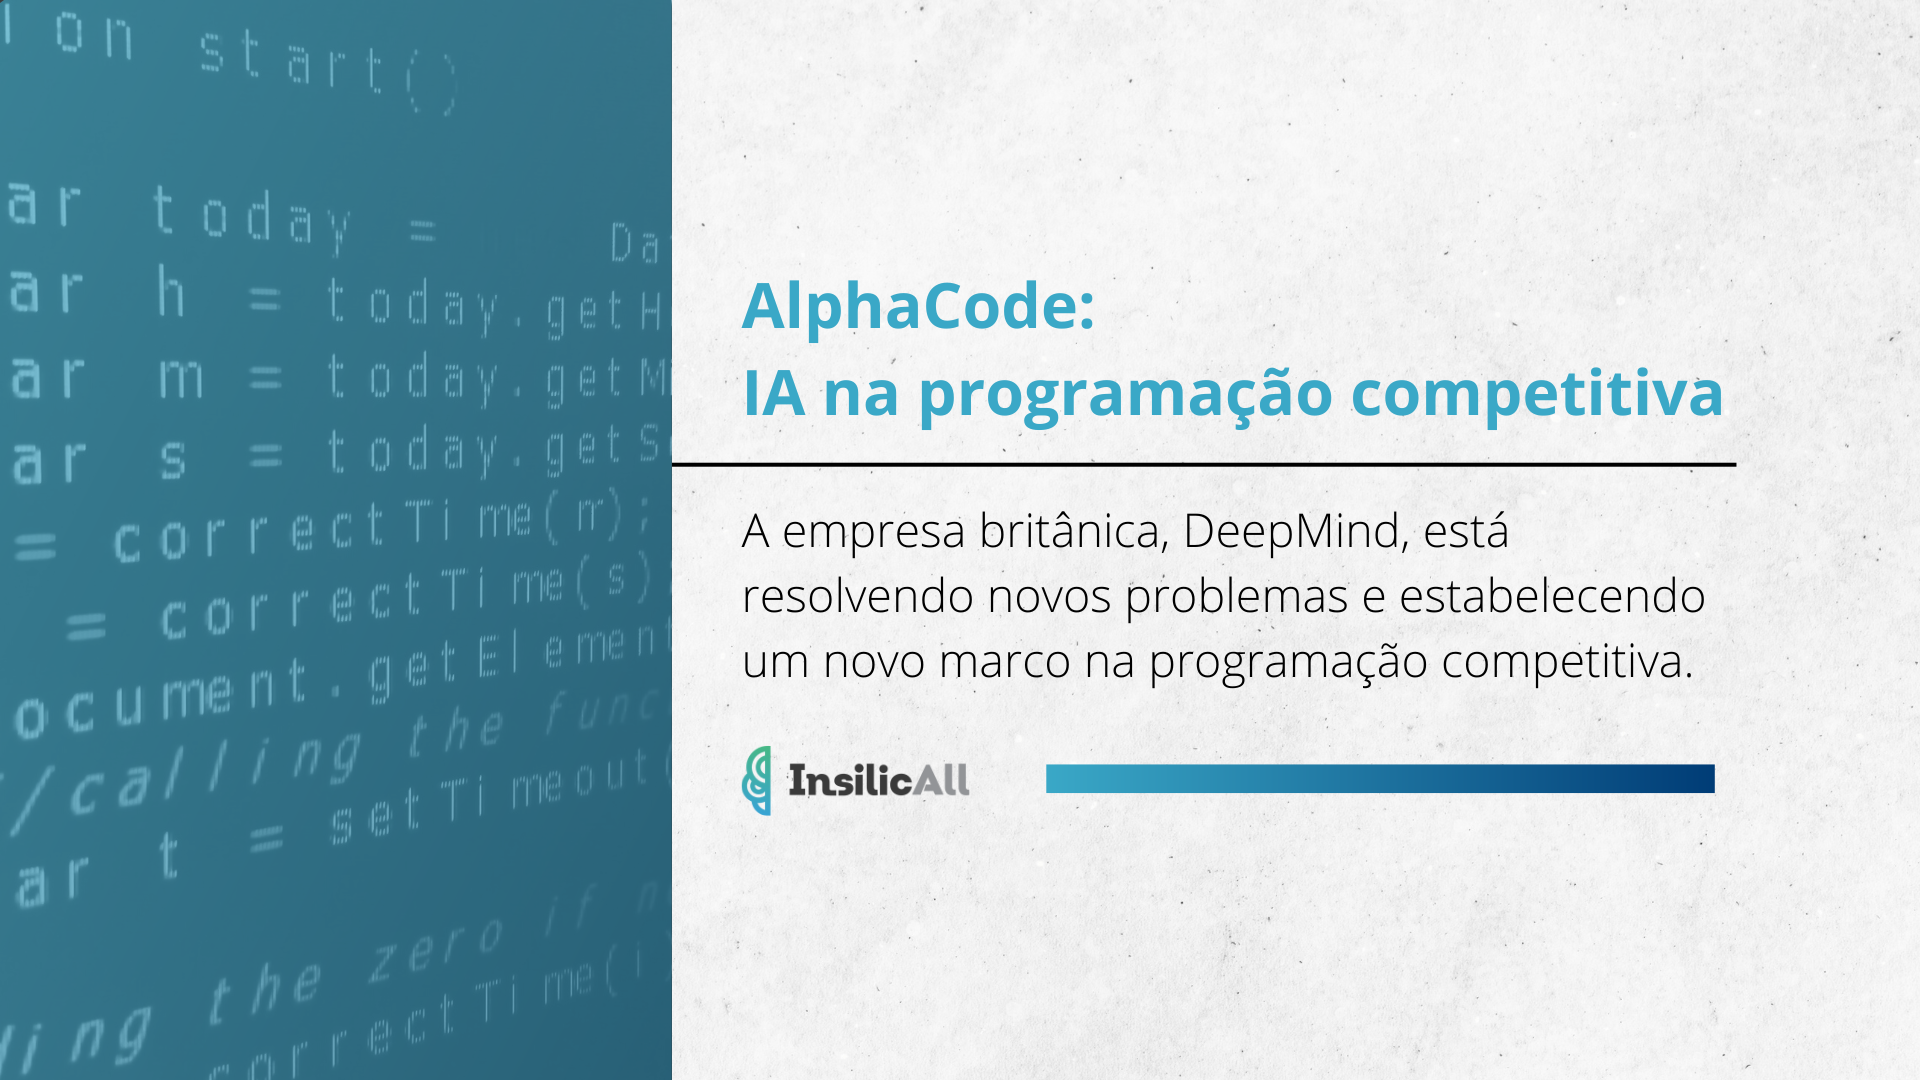 AlphaCode: IA na programação competitiva